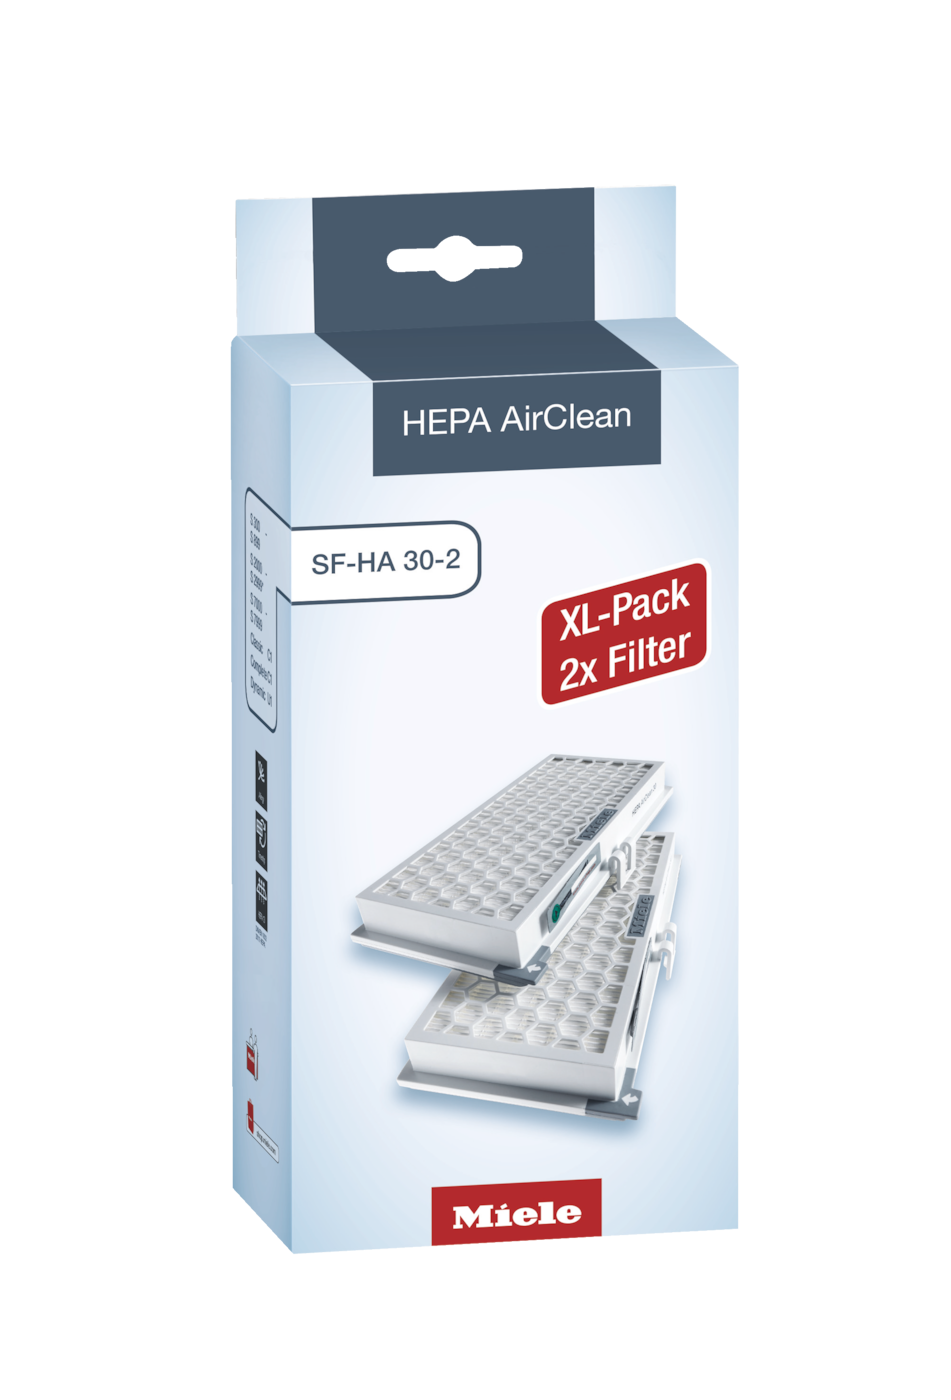 XL-Pack HEPA AirClean szűrő   Dupla csomagolás kedvező áron – két évnyi tiszta levegőért 